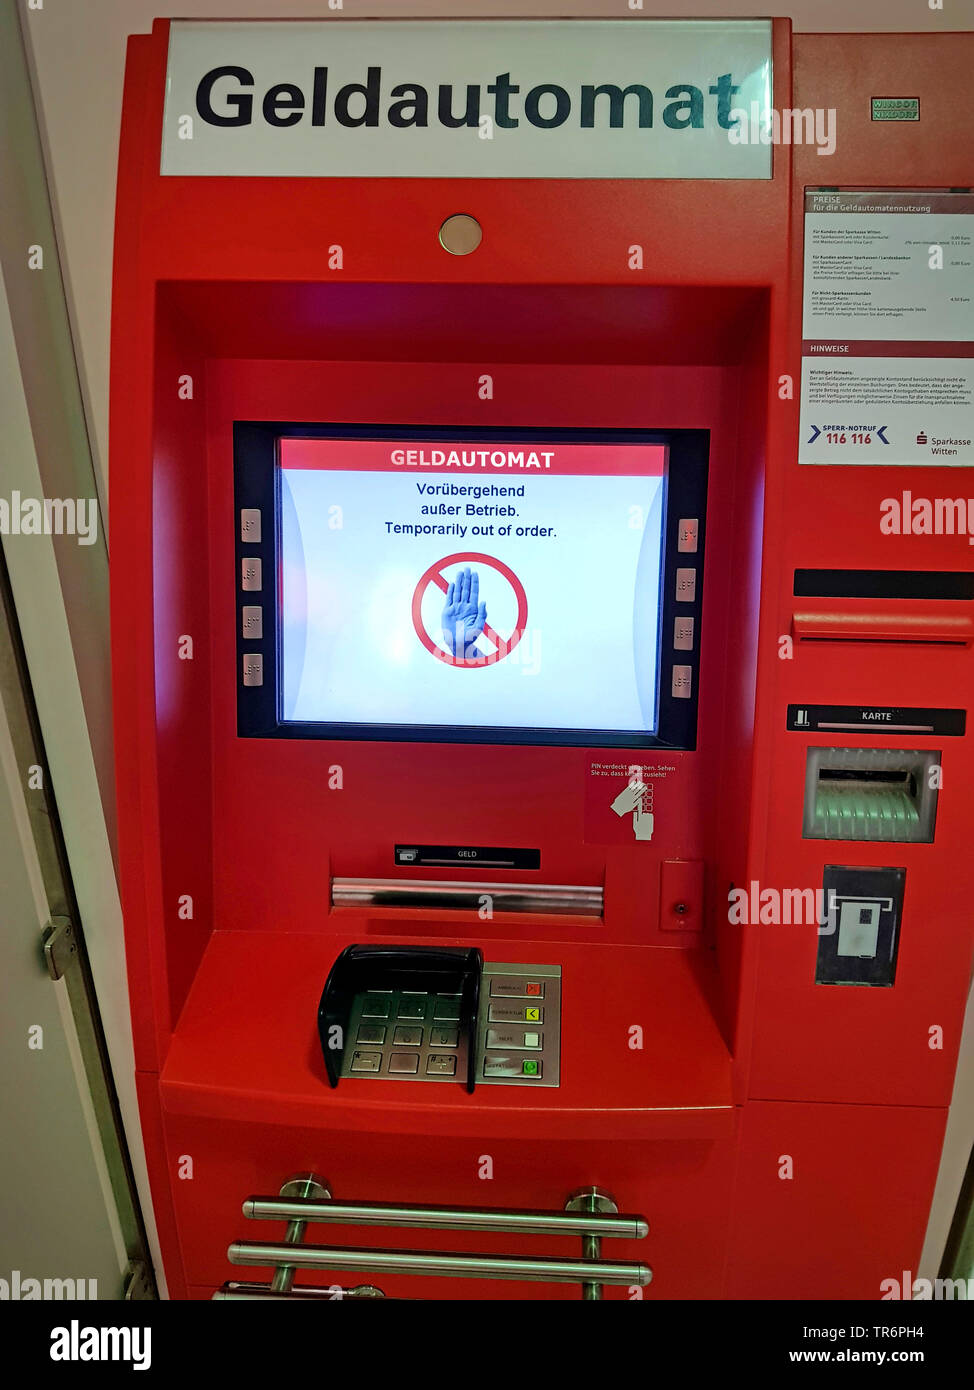 Guichet automatique, temporairement en panne, Allemagne Banque D'Images